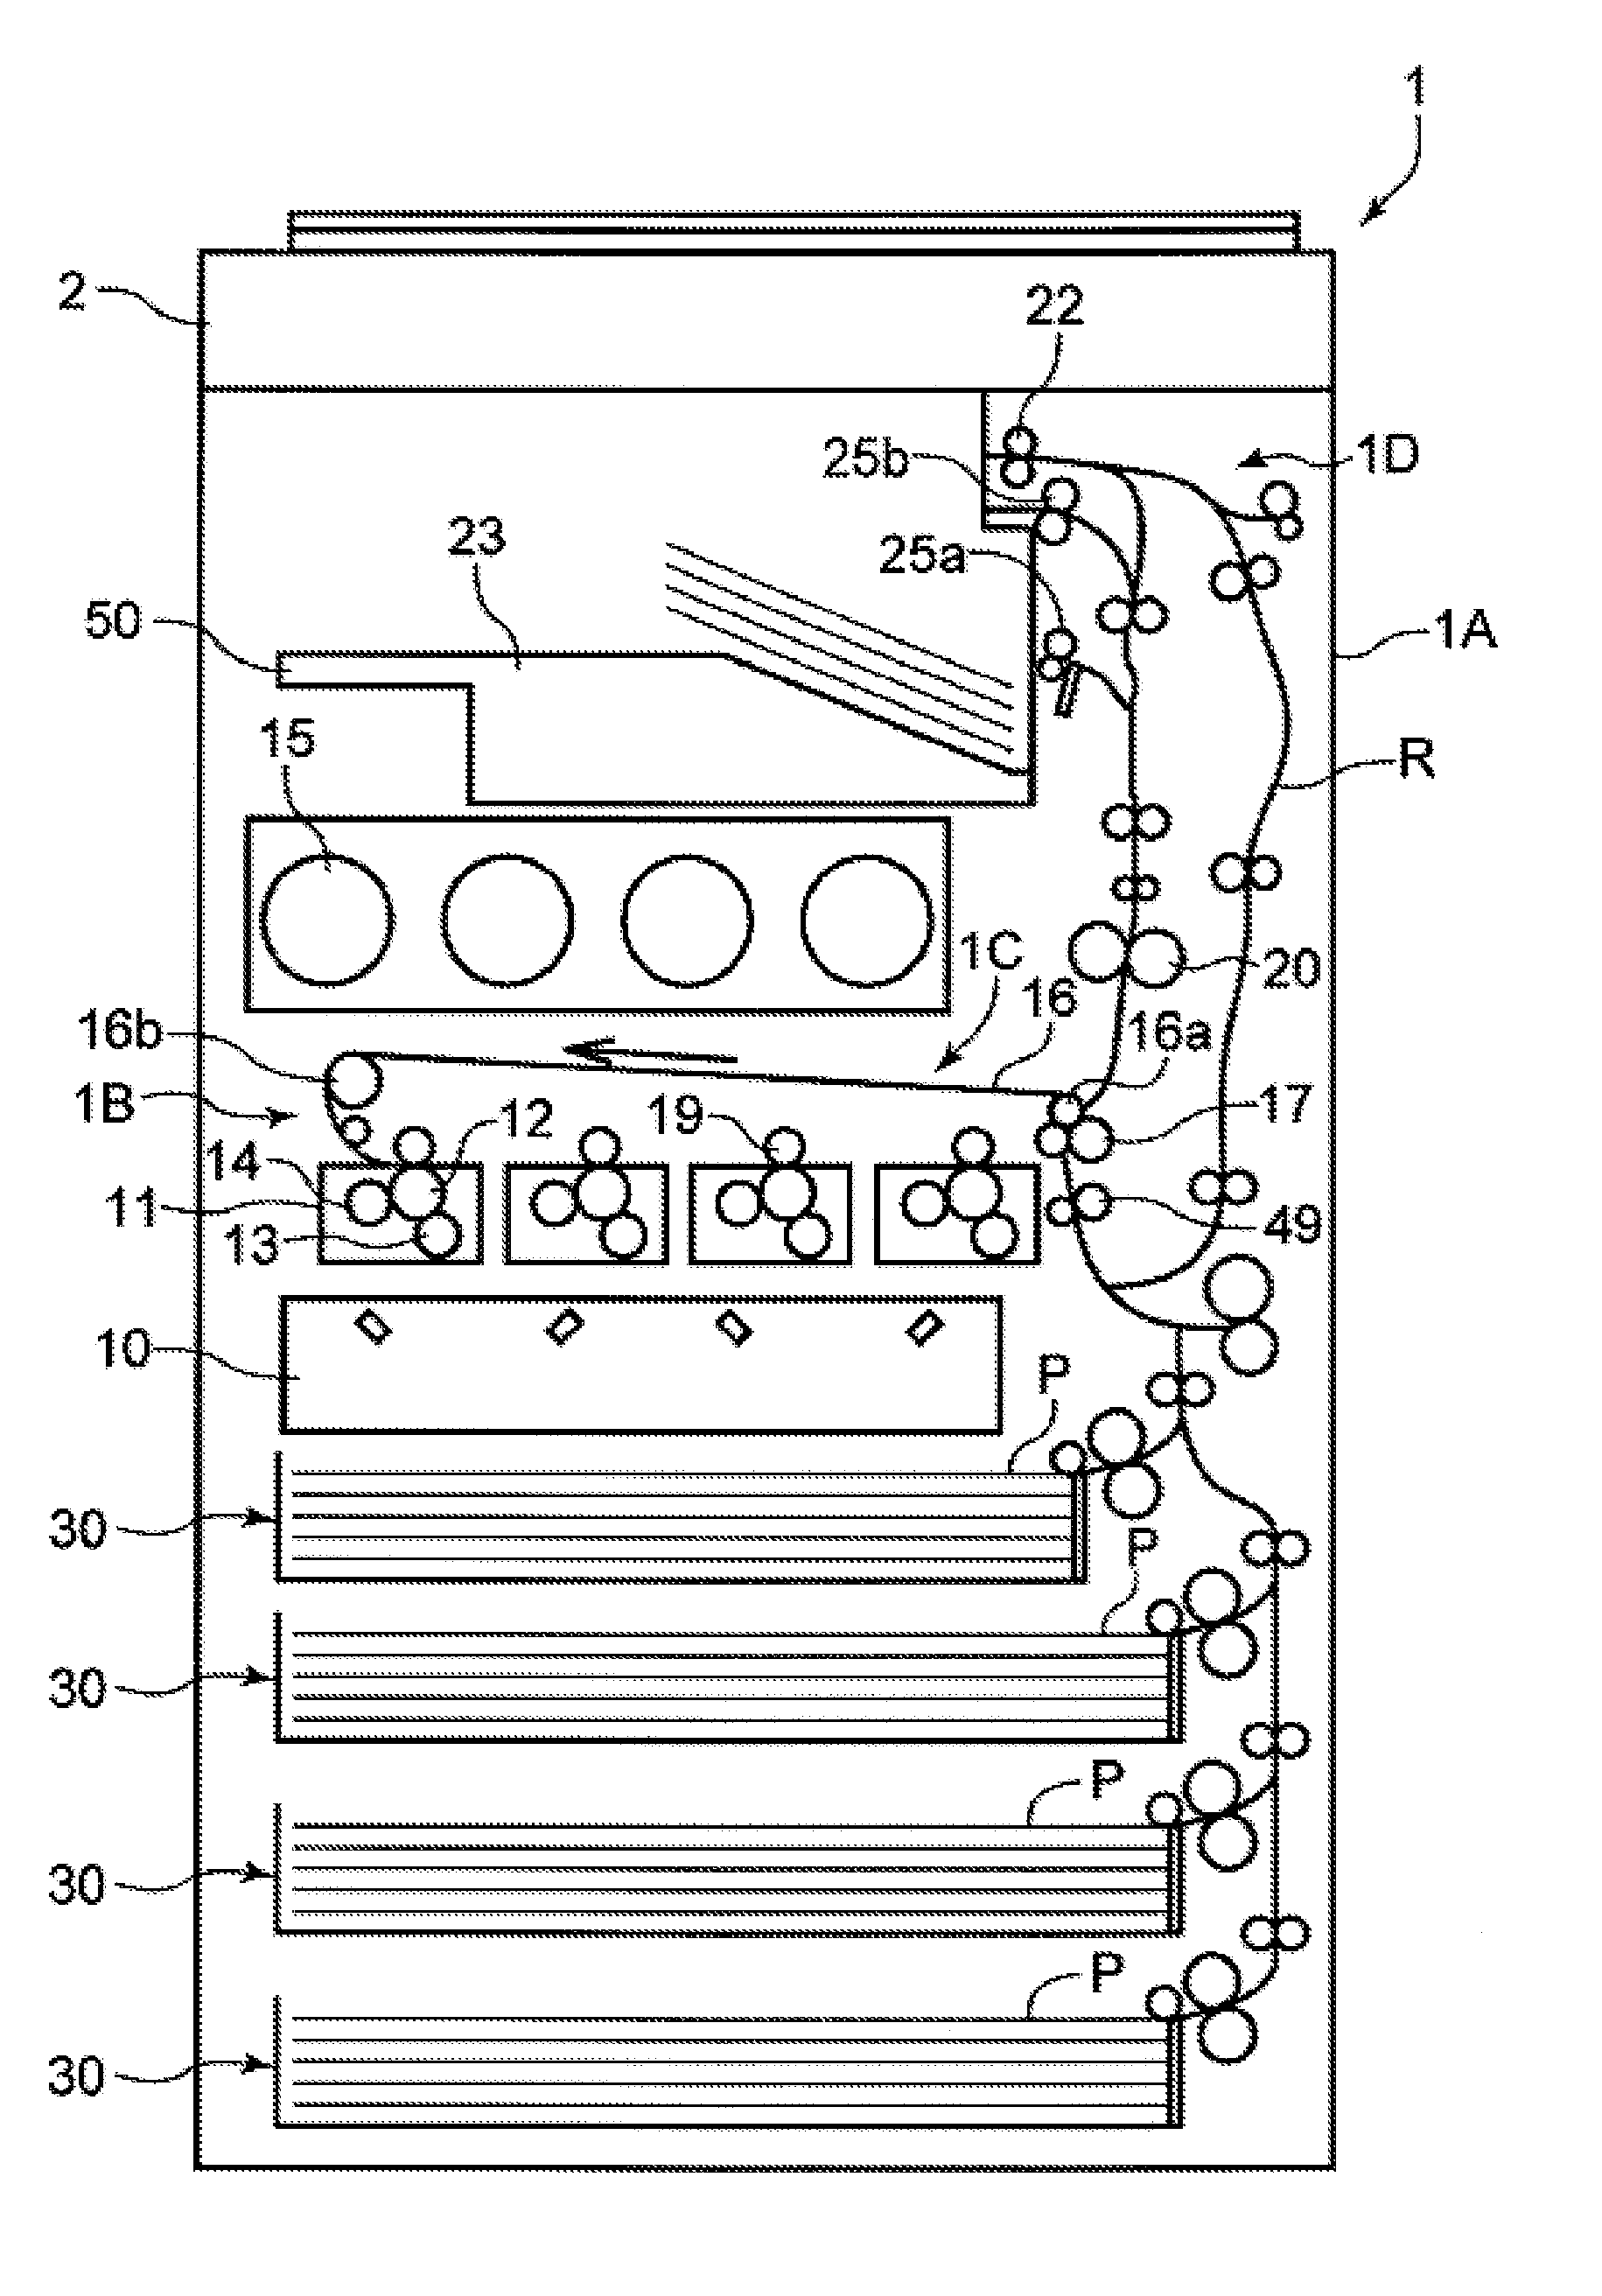 Sheet feeding apparatus and image forming apparatus